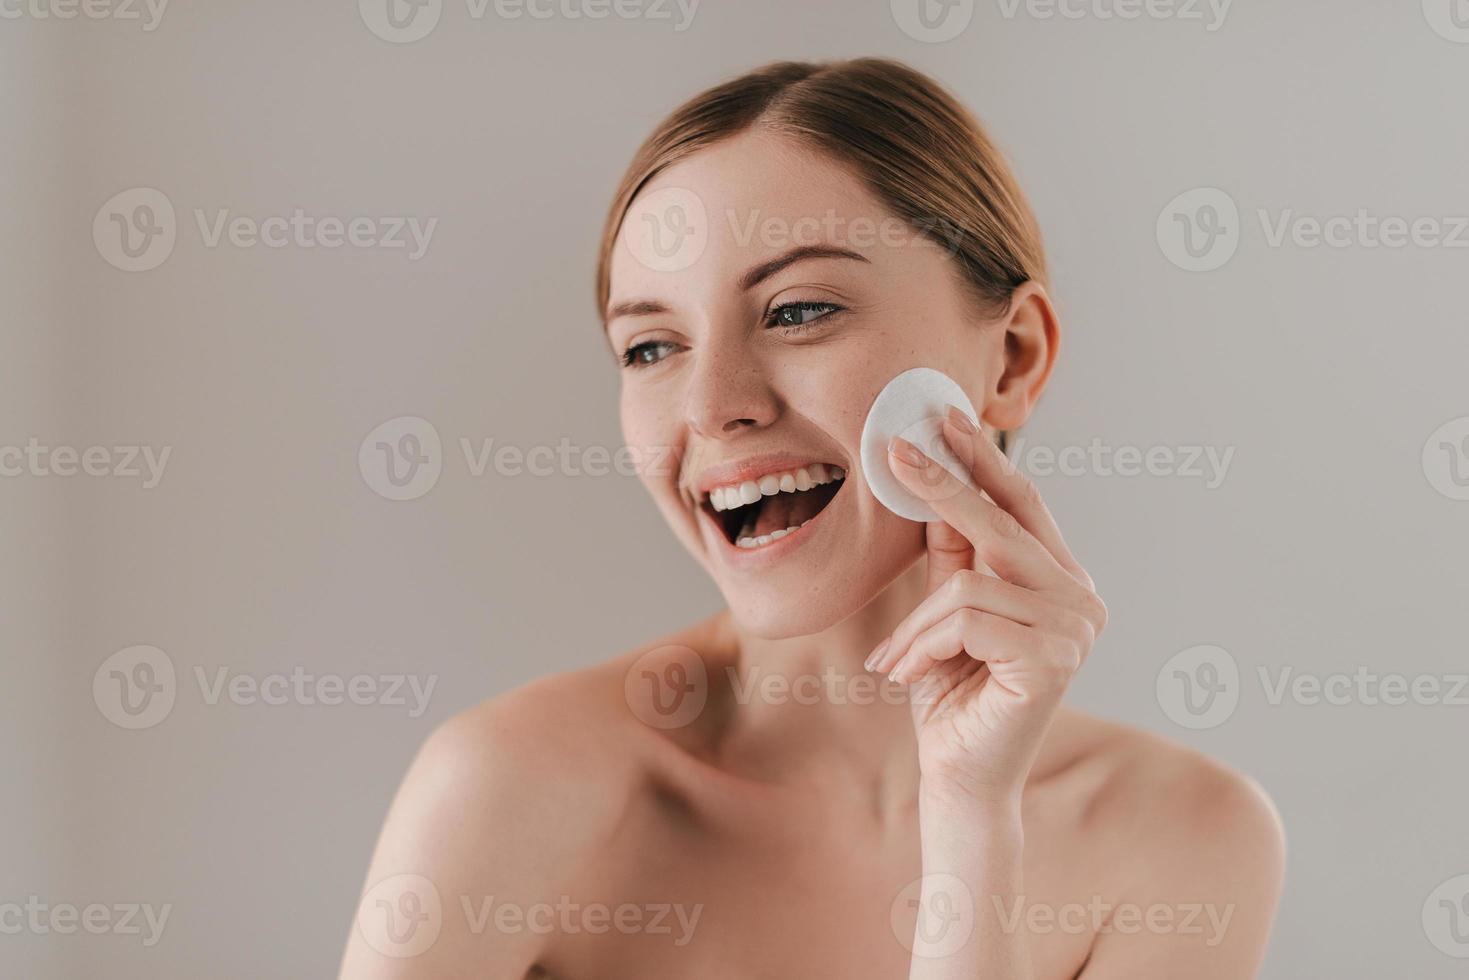 bringt Frische auf ihre Haut. Studioporträt einer attraktiven Frau, die ihre Haut mit einem Wattepad reinigt, während sie vor dem Hintergrund steht foto